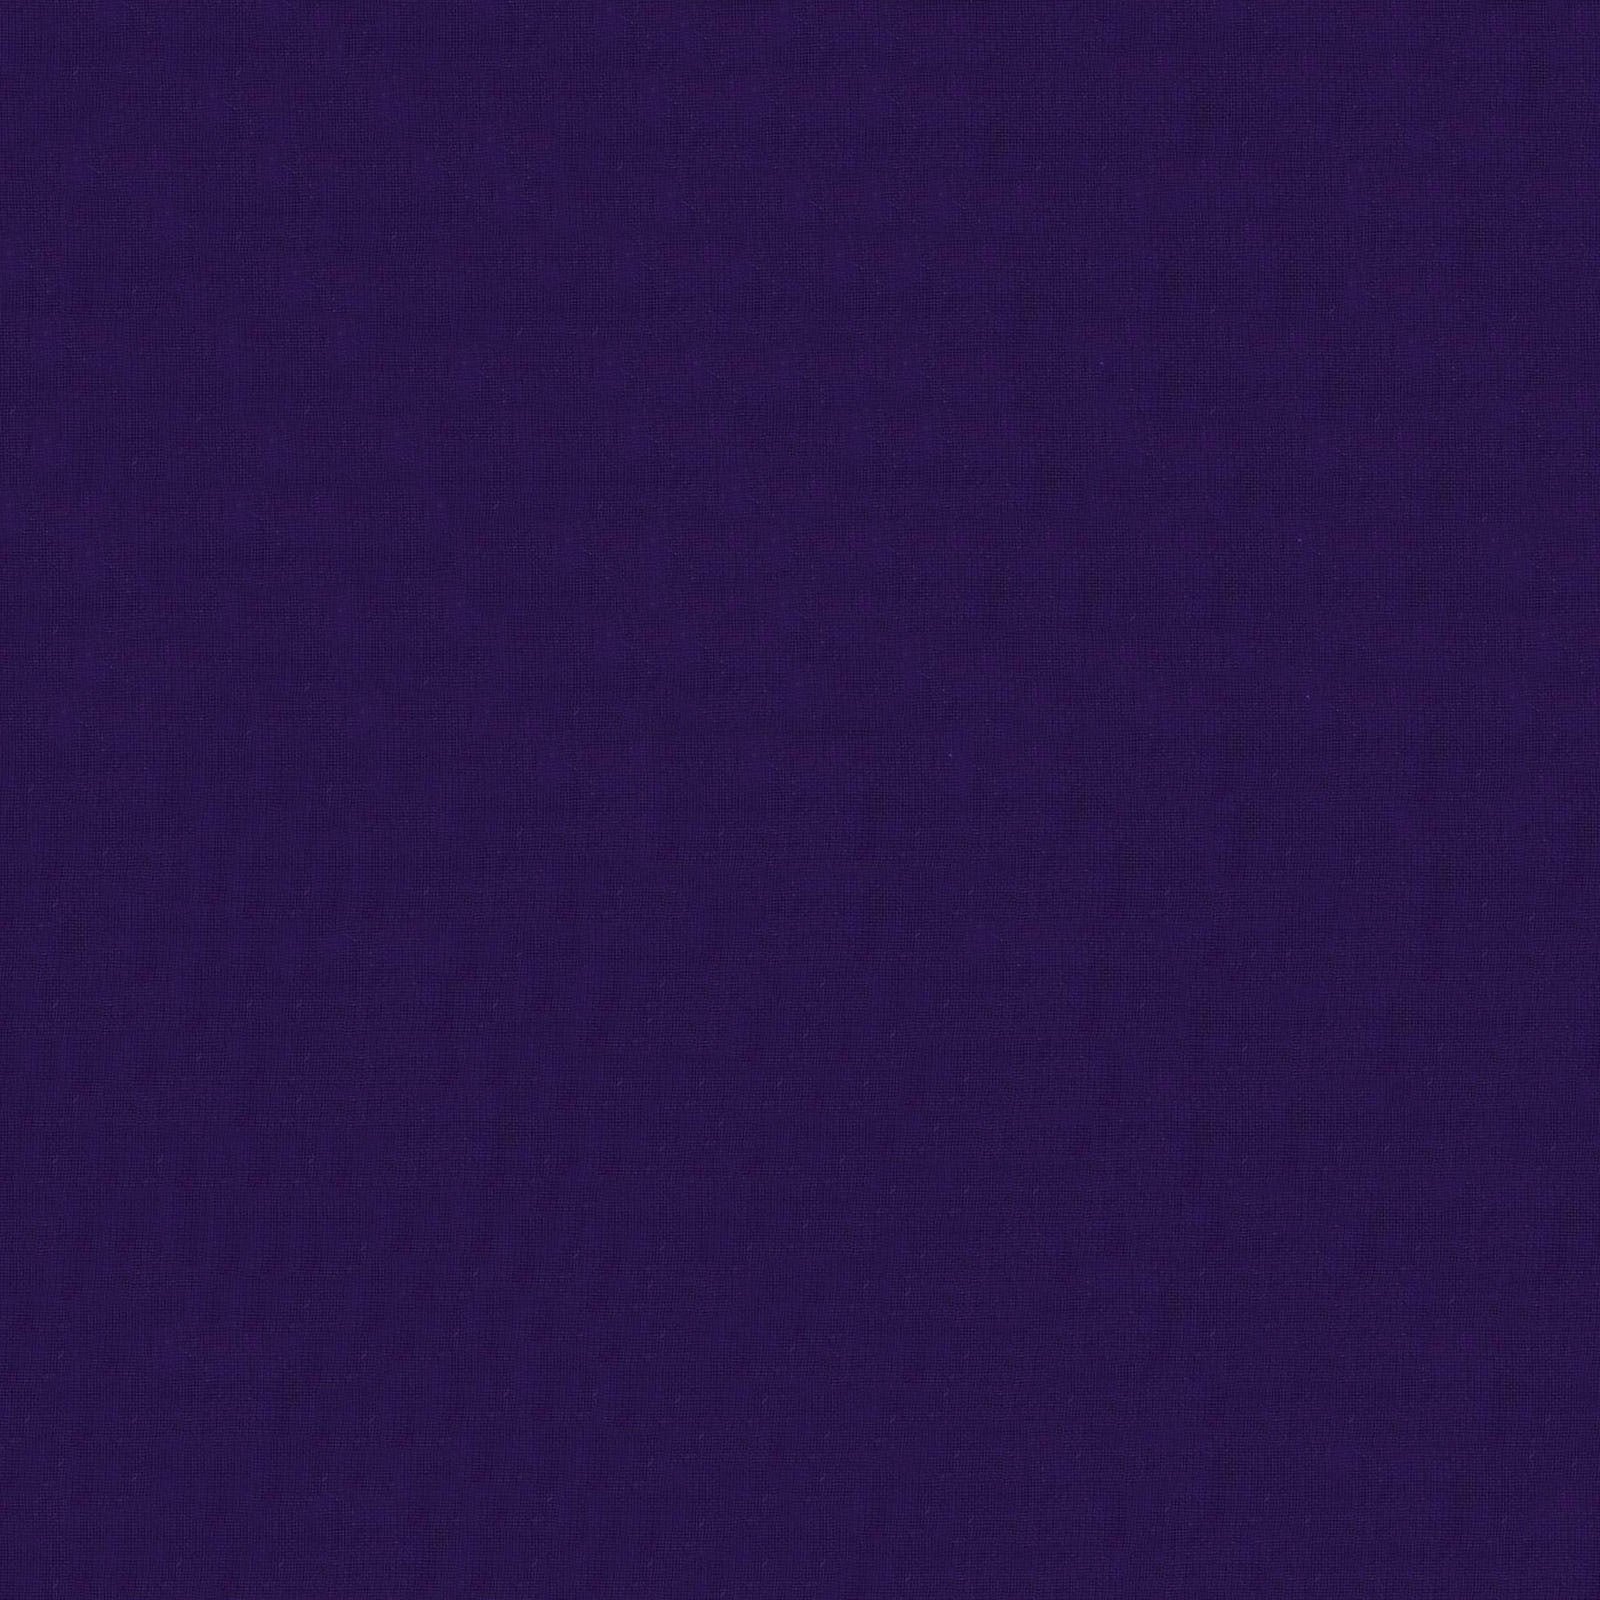 Polyester Chiffon Fabric - Purple